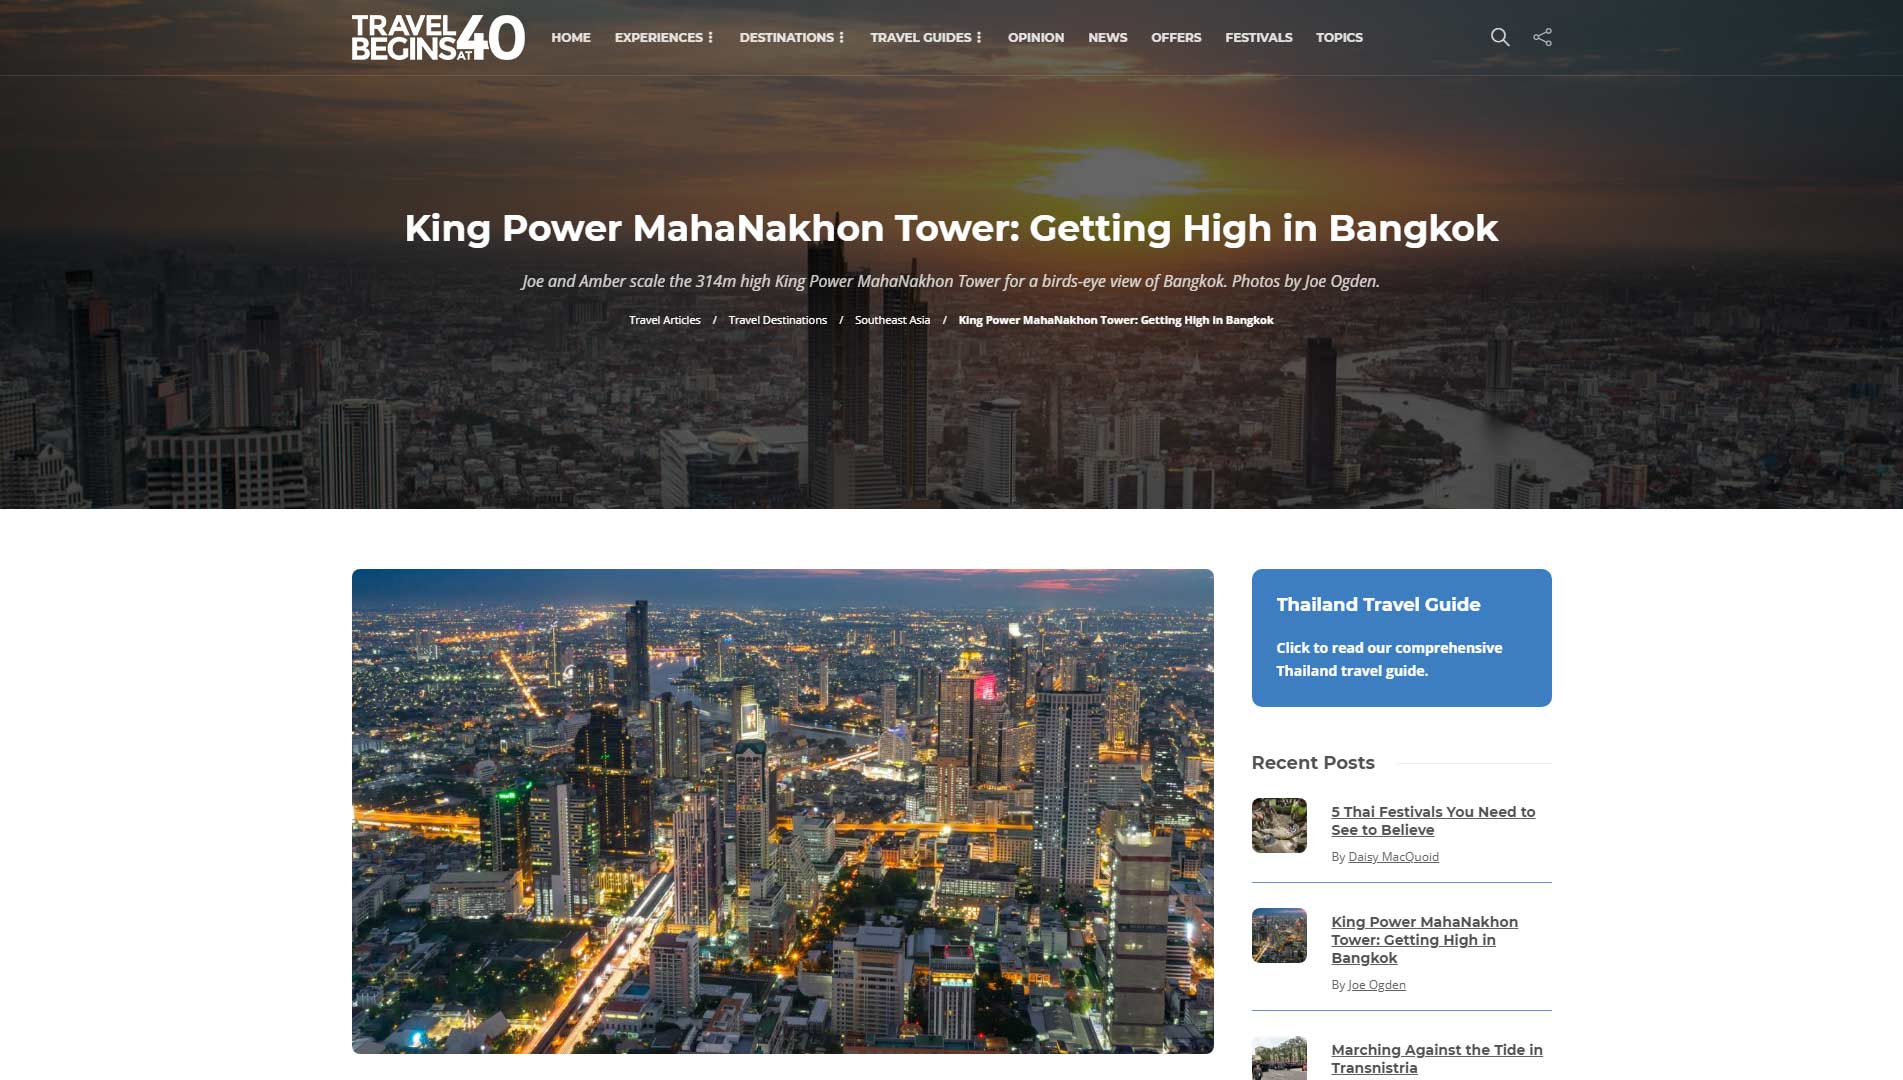 Scaling the King Power MahaNakhon Tower in Bangkok